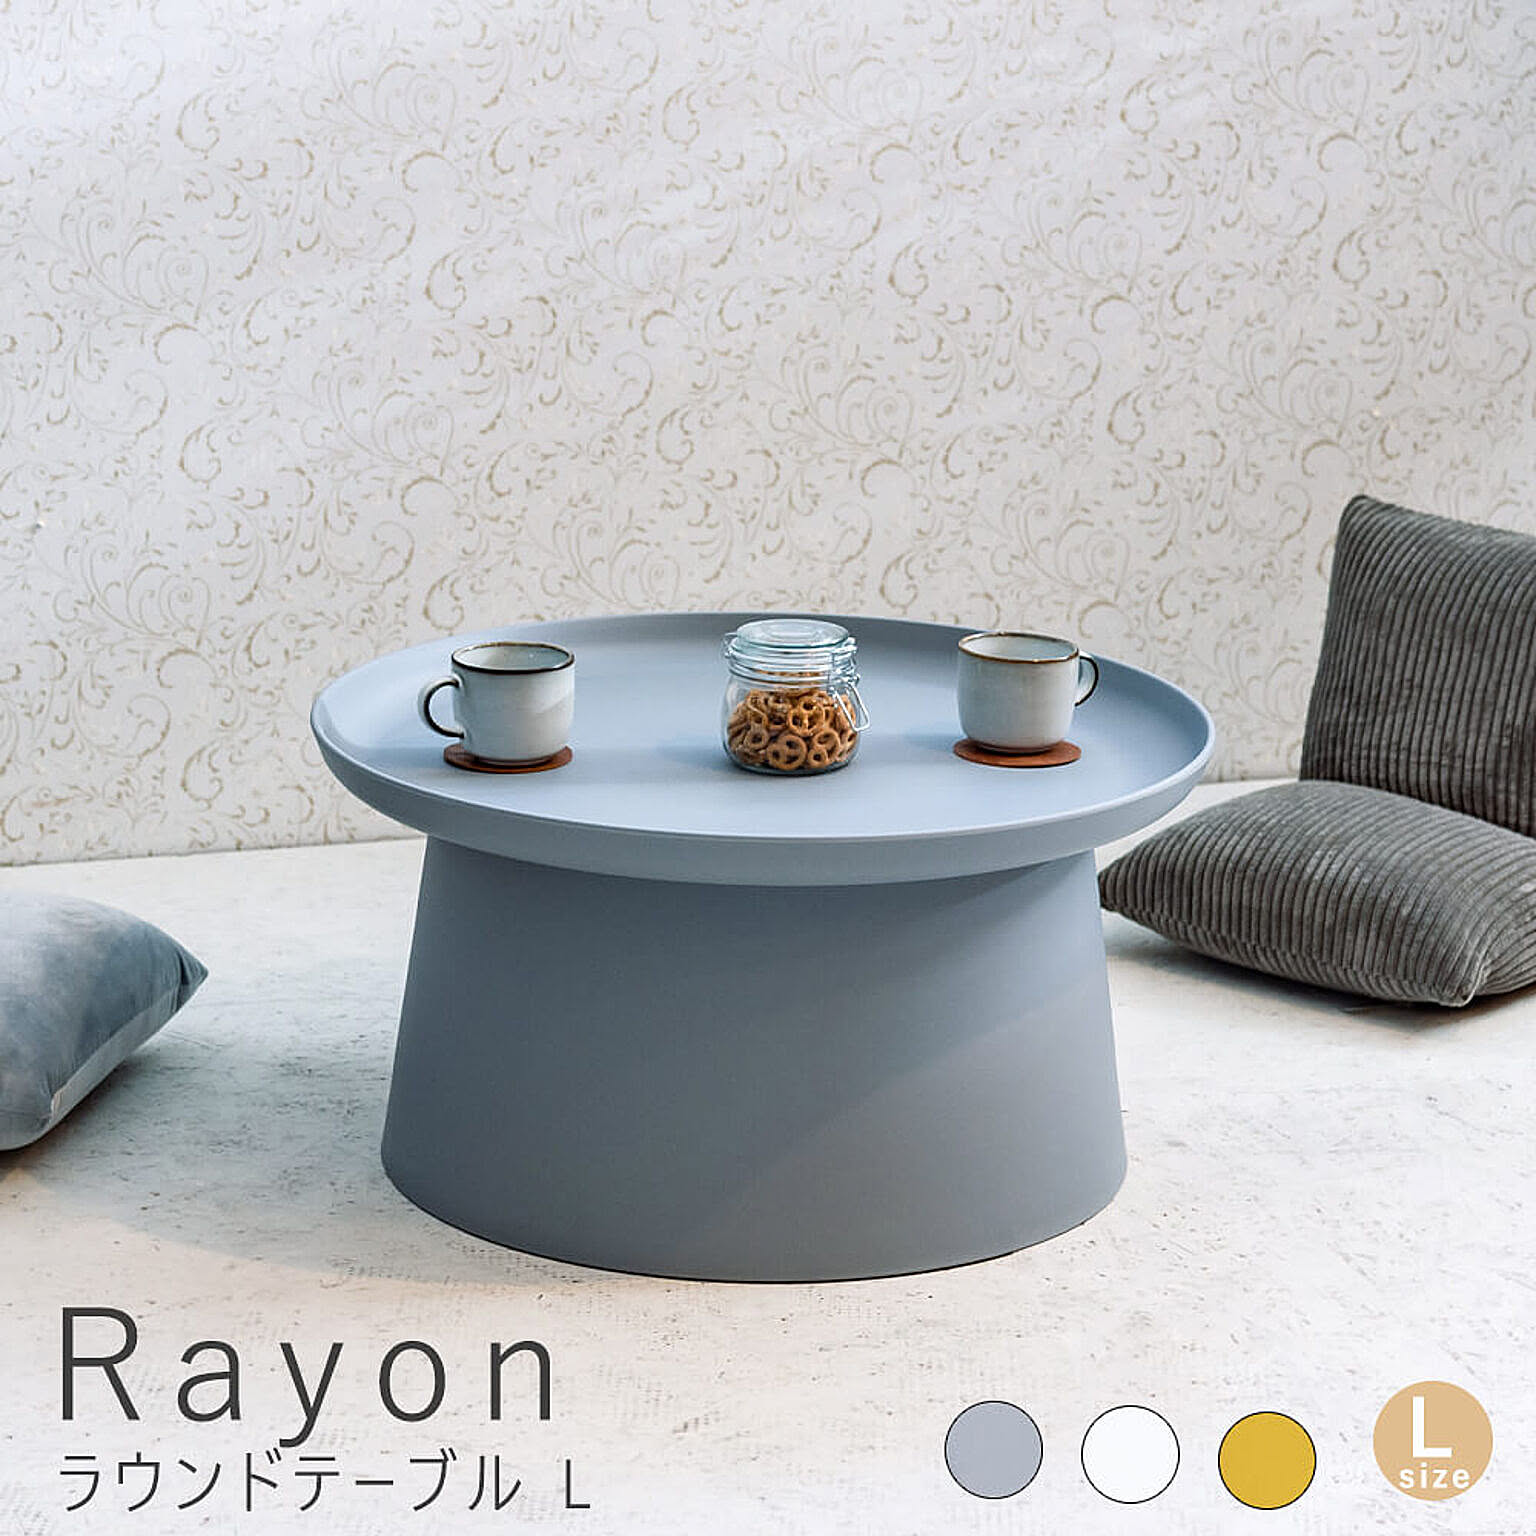 Rayon(レイヨン) ラウンドテーブル L m11616